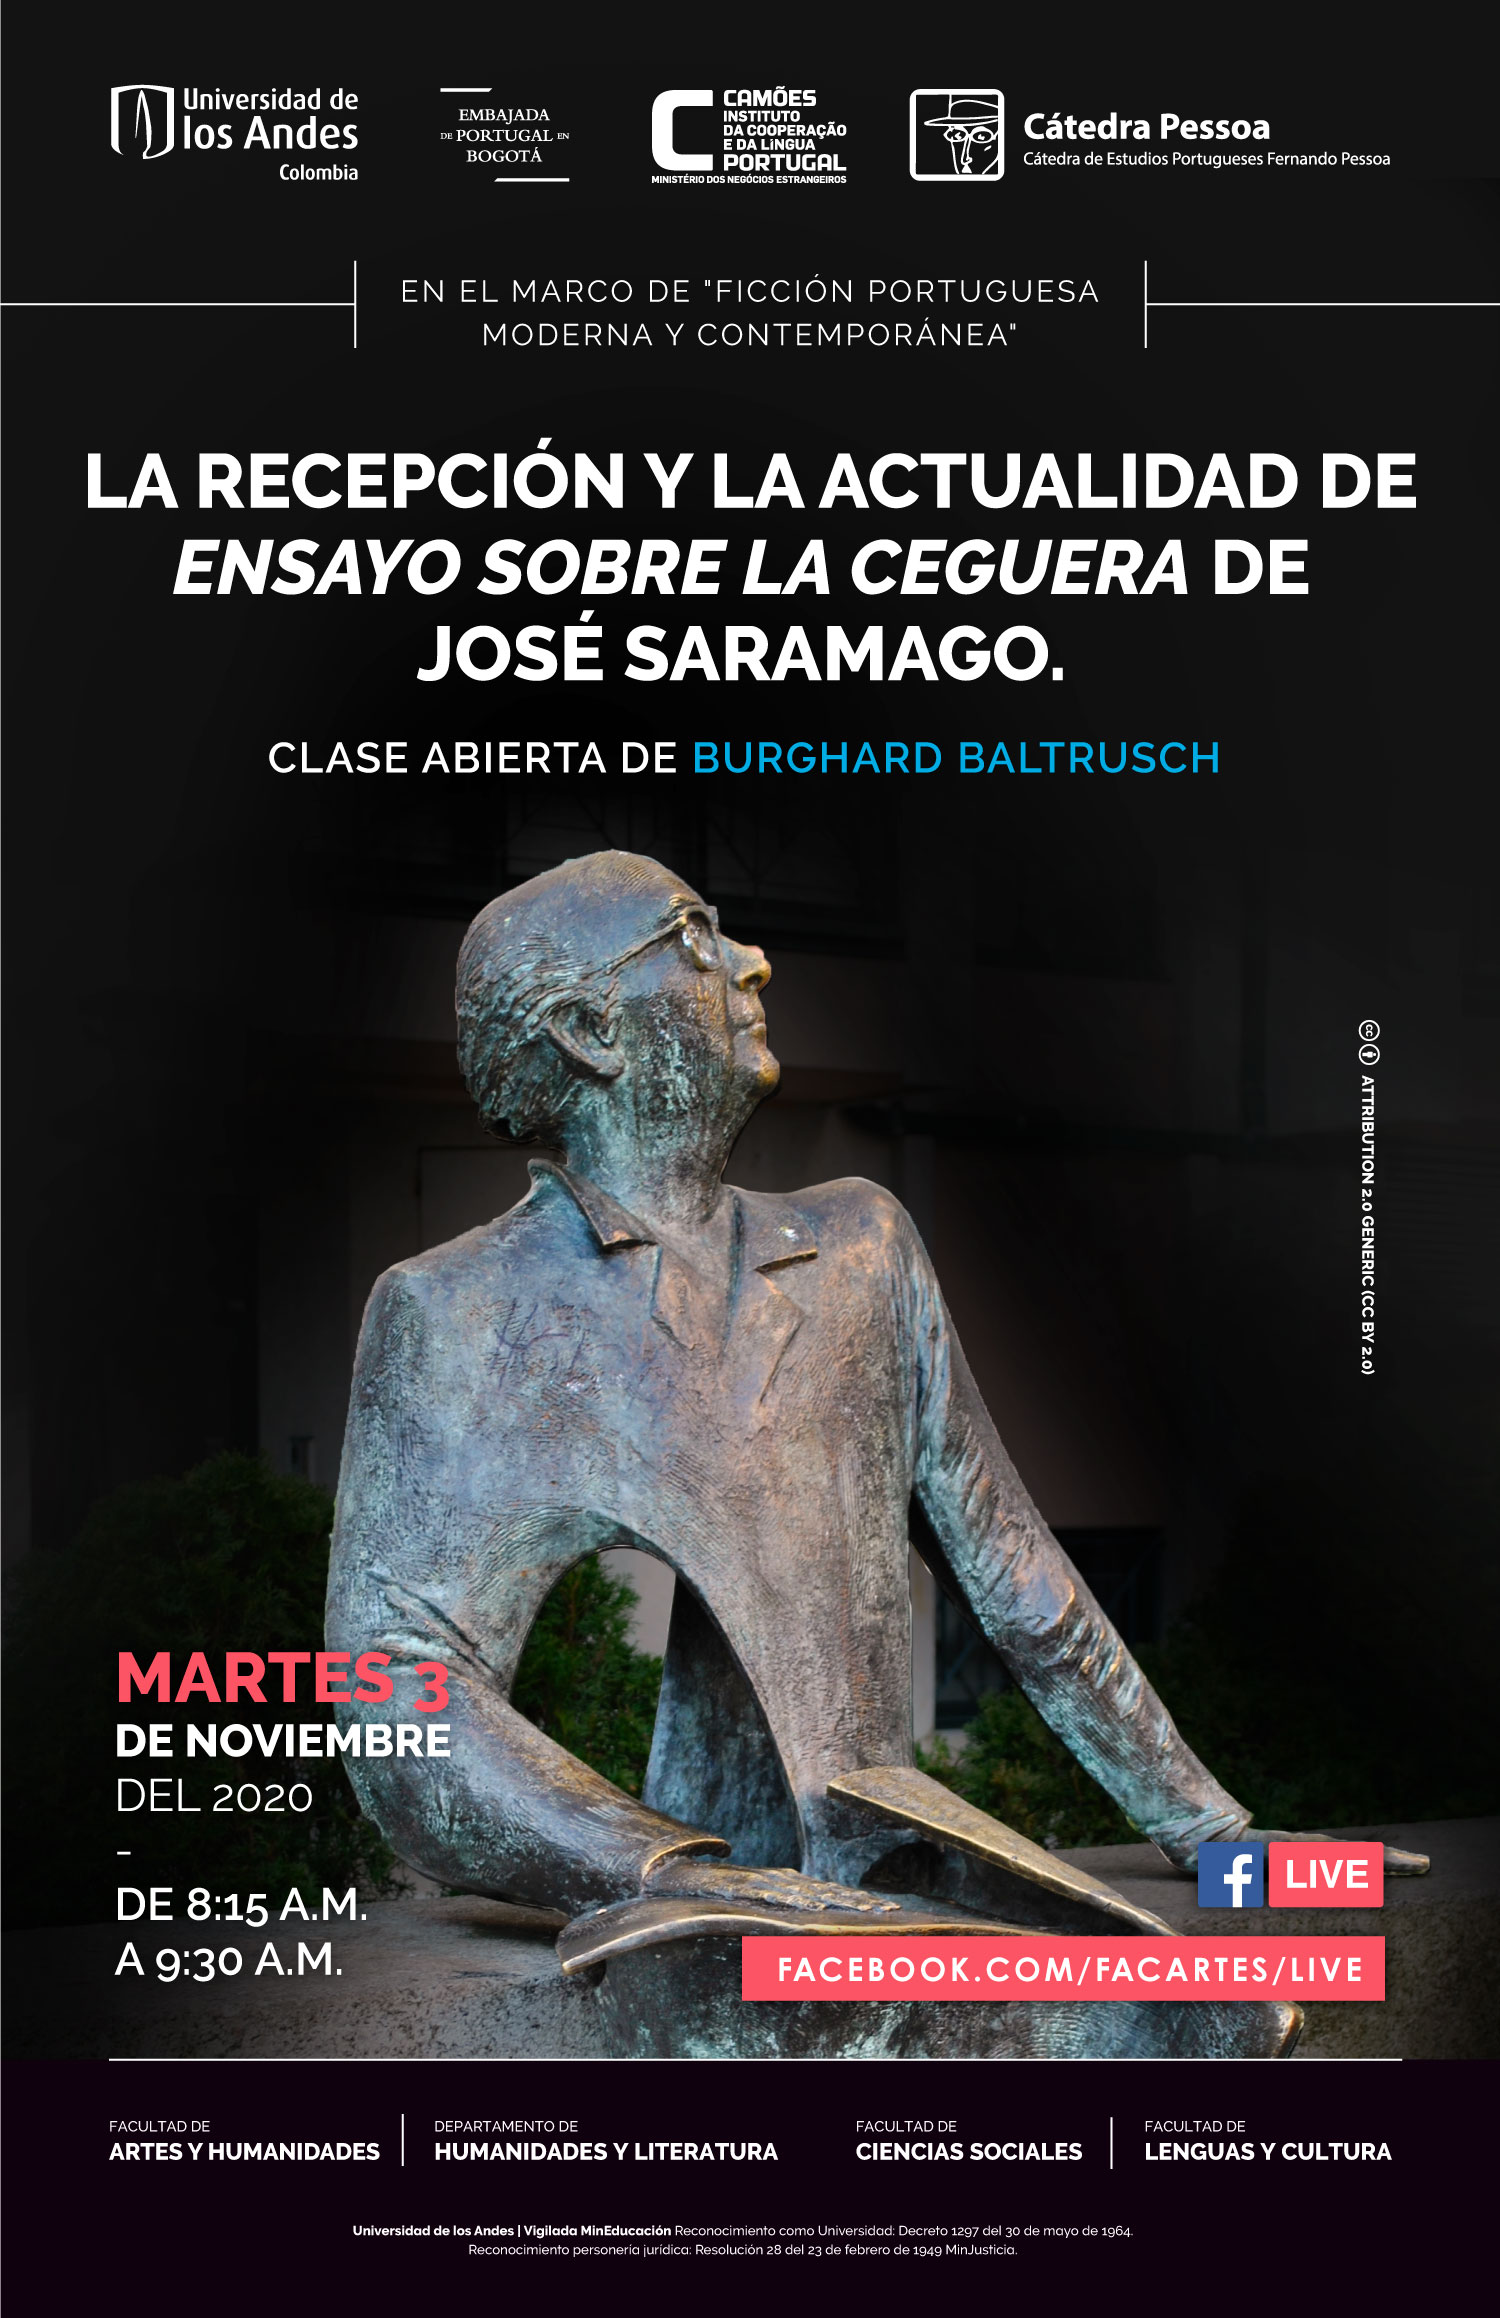 La recepción y la actualidad de Ensayo sobre la ceguera de José Saramago